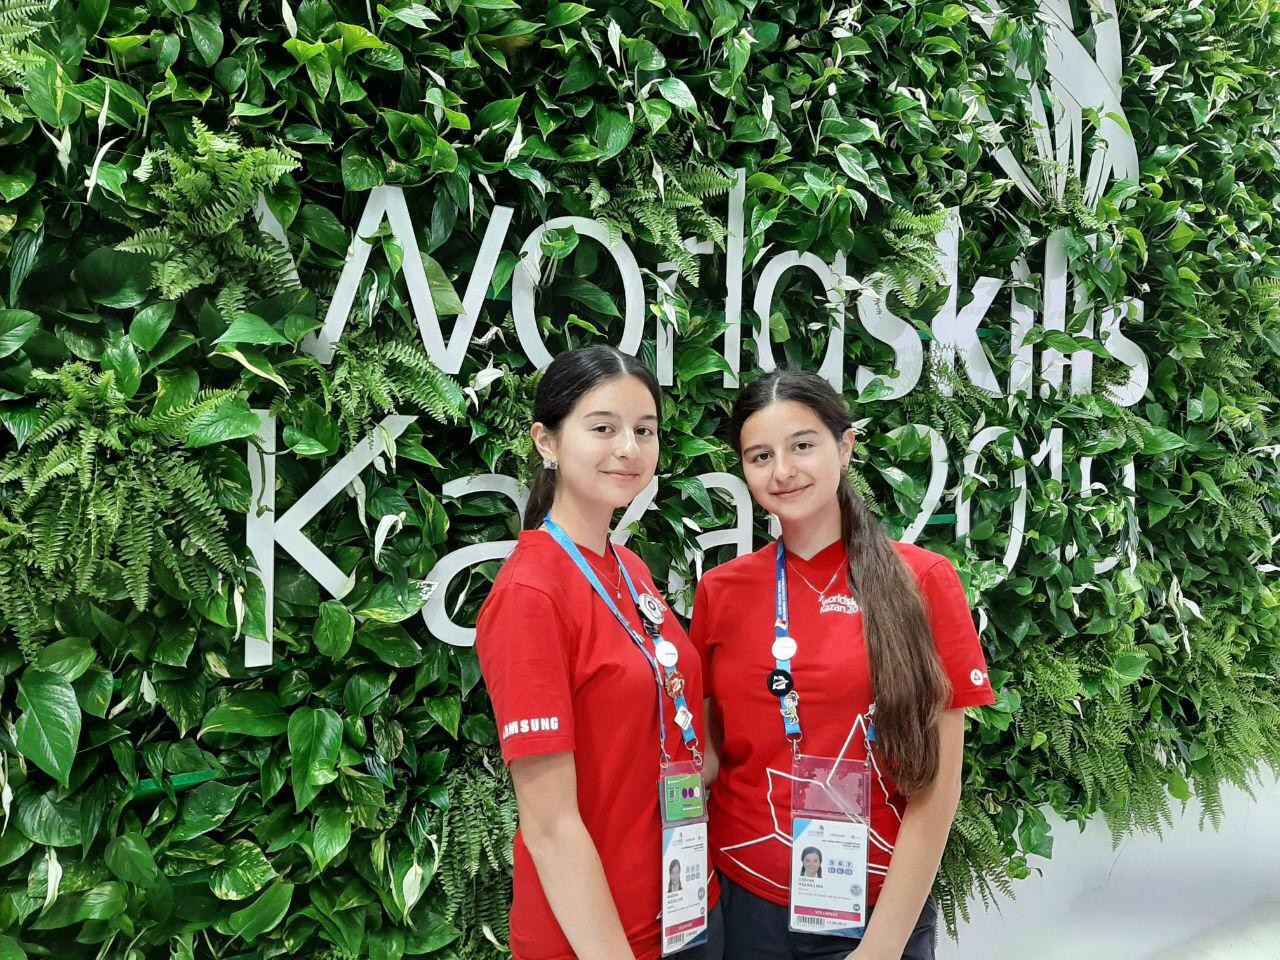   WorldSkills-2019   ,  ,  ,   